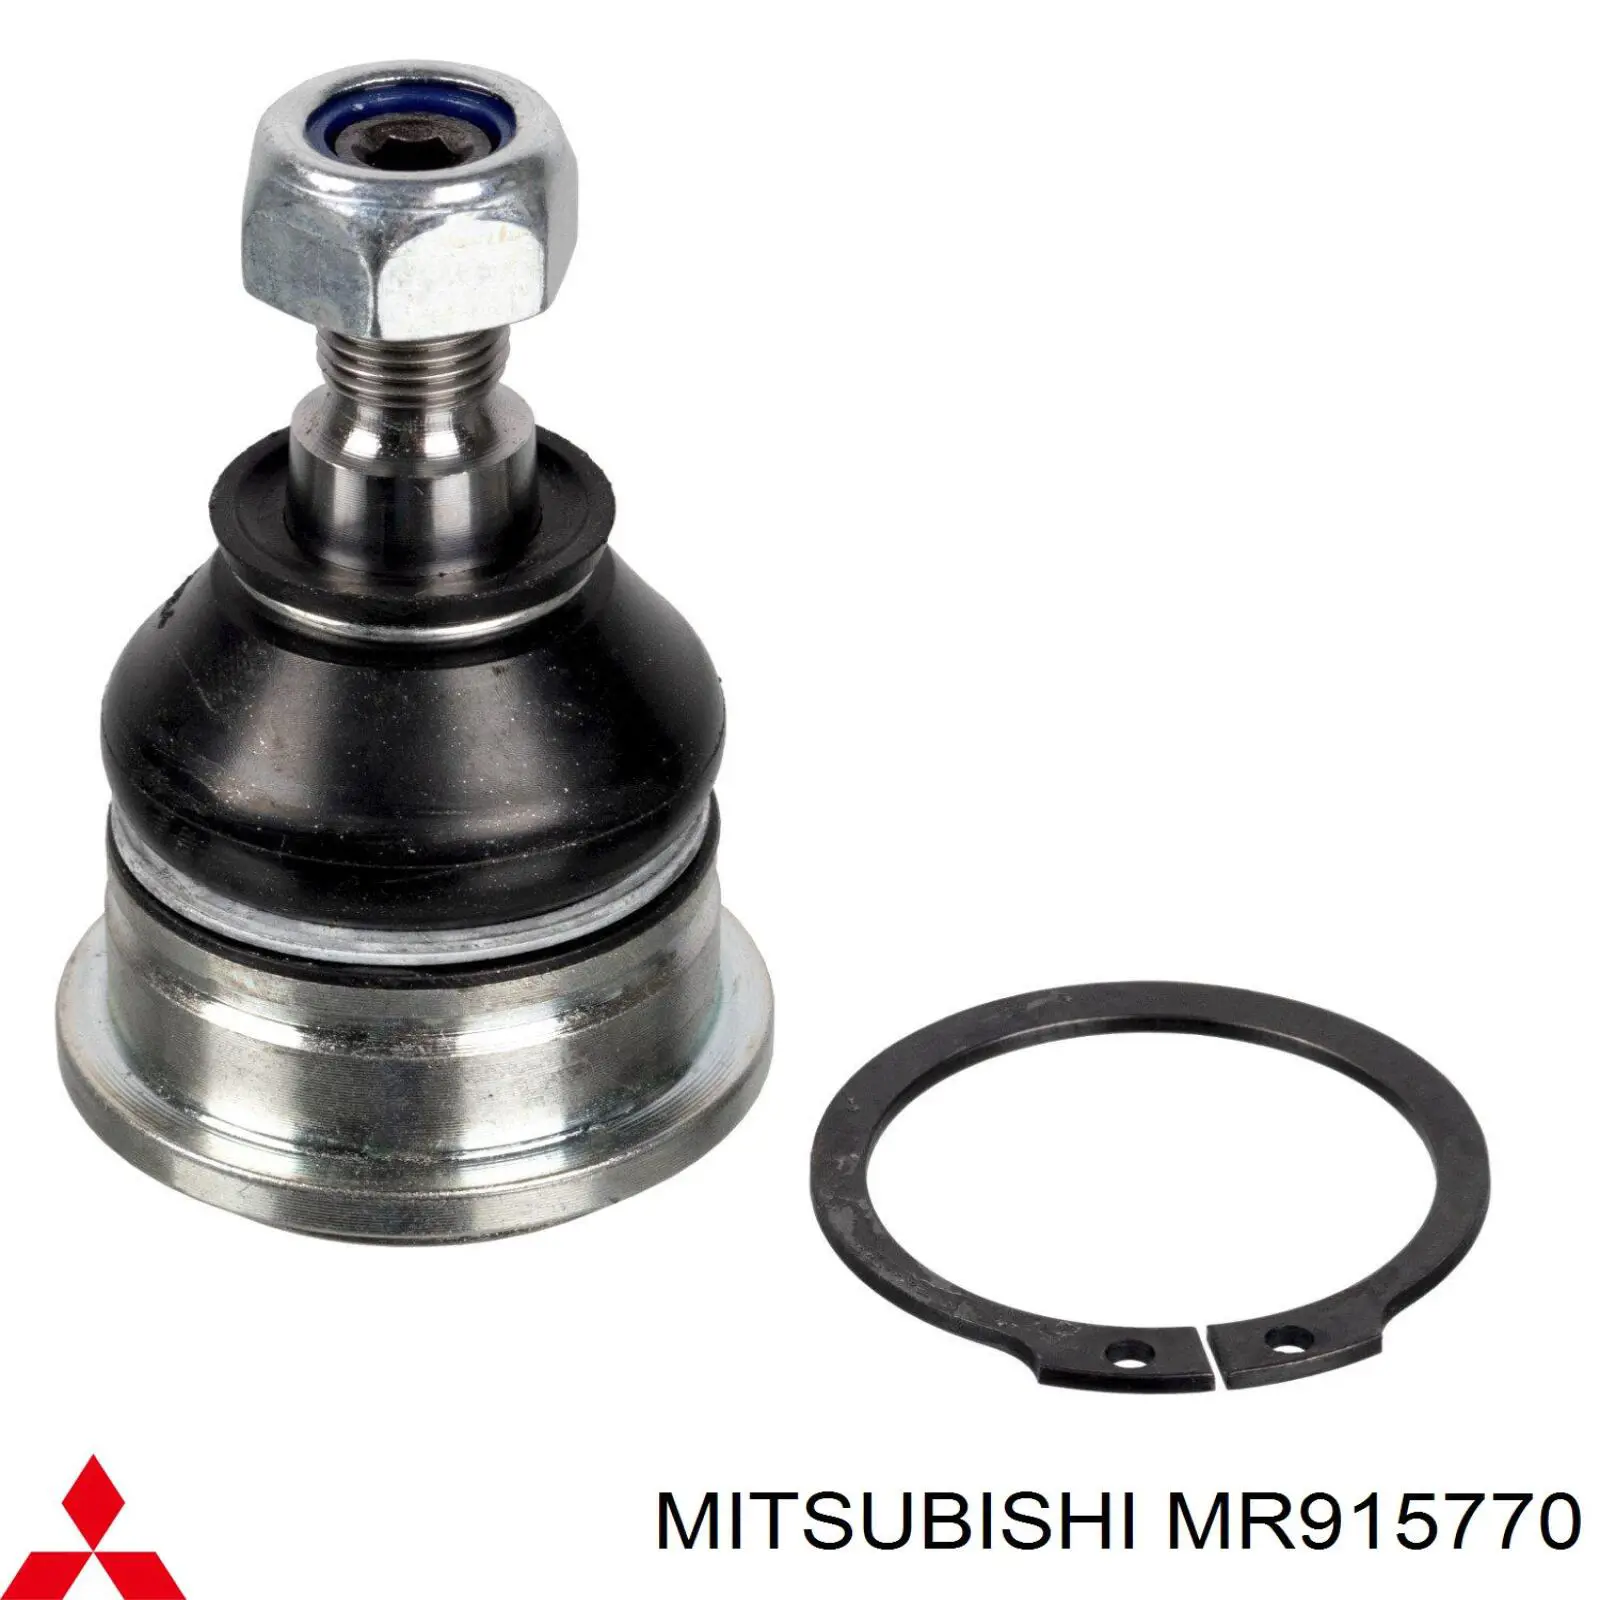 MR915770 Mitsubishi barra oscilante, suspensión de ruedas delantera, inferior derecha